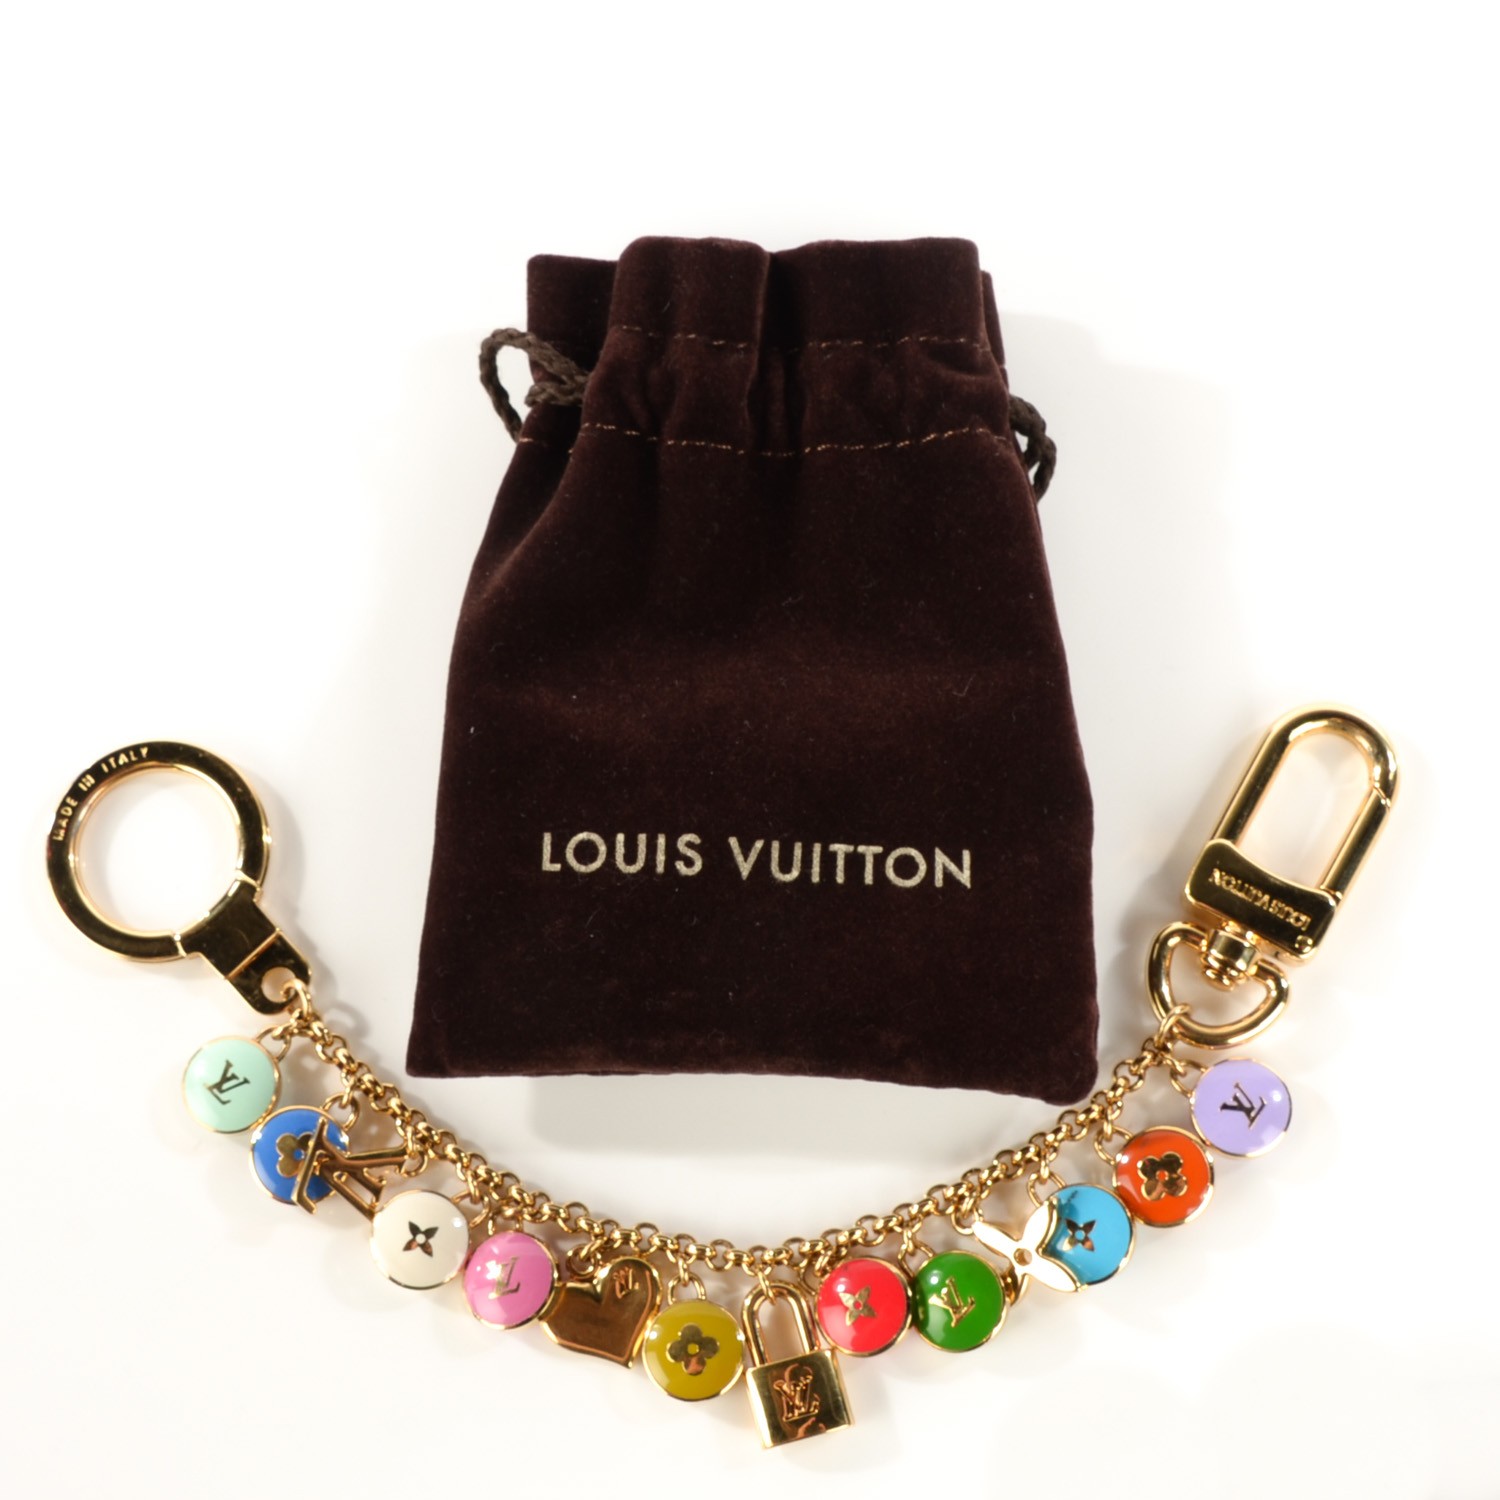 LOUIS VUITTON Pastilles Key Chain Bag Charm Multicolor 193946